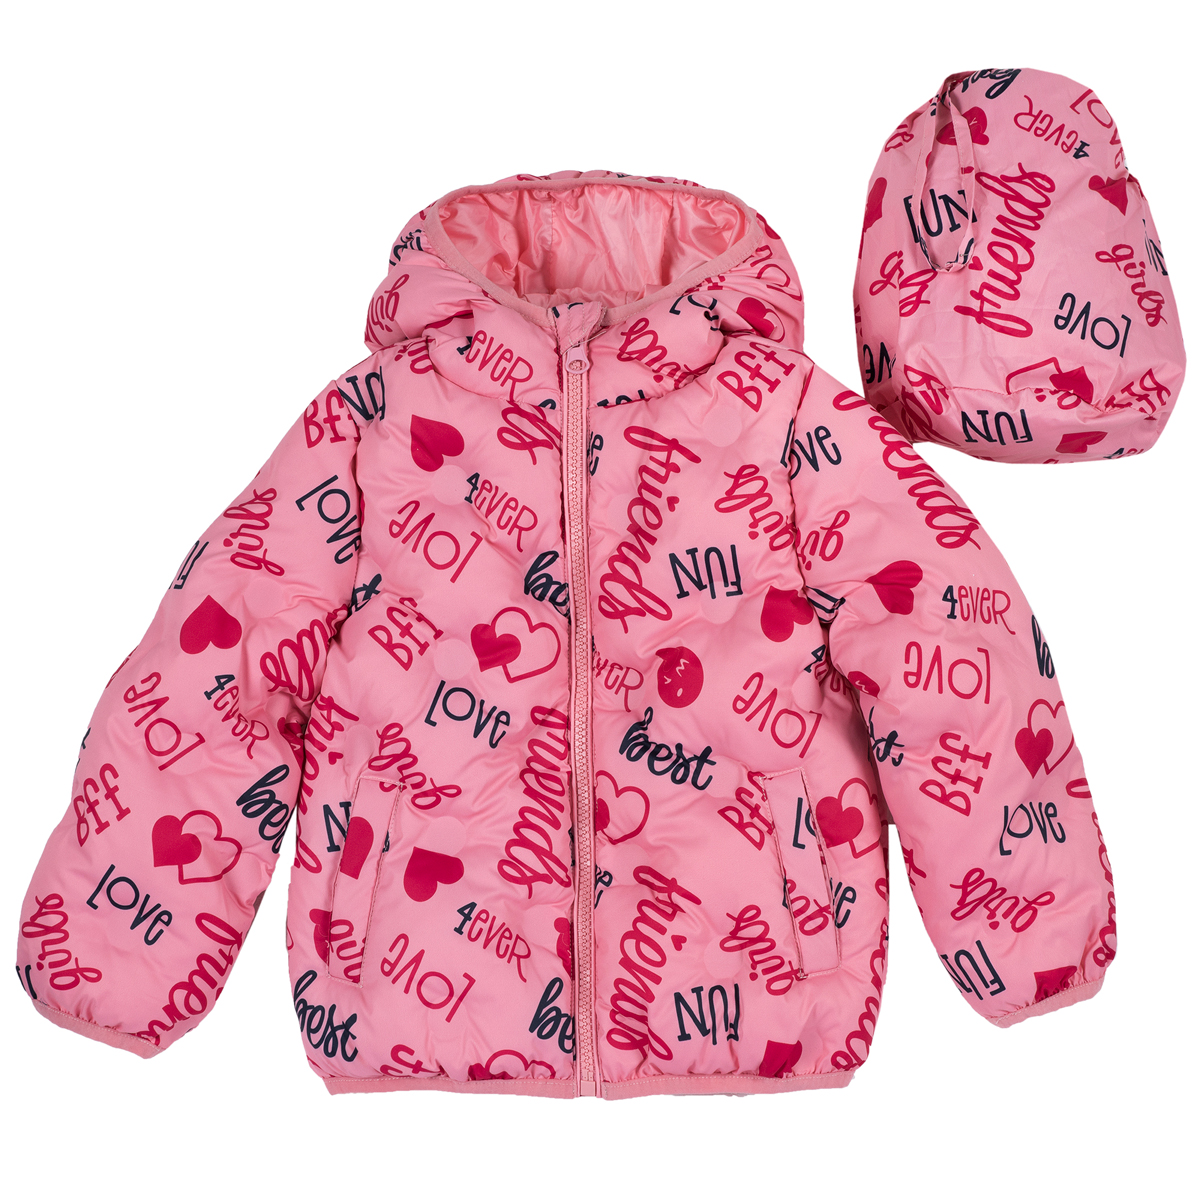 Jacheta copii Chicco, impermeabila si matlasata, roz, 87410 CHICCO